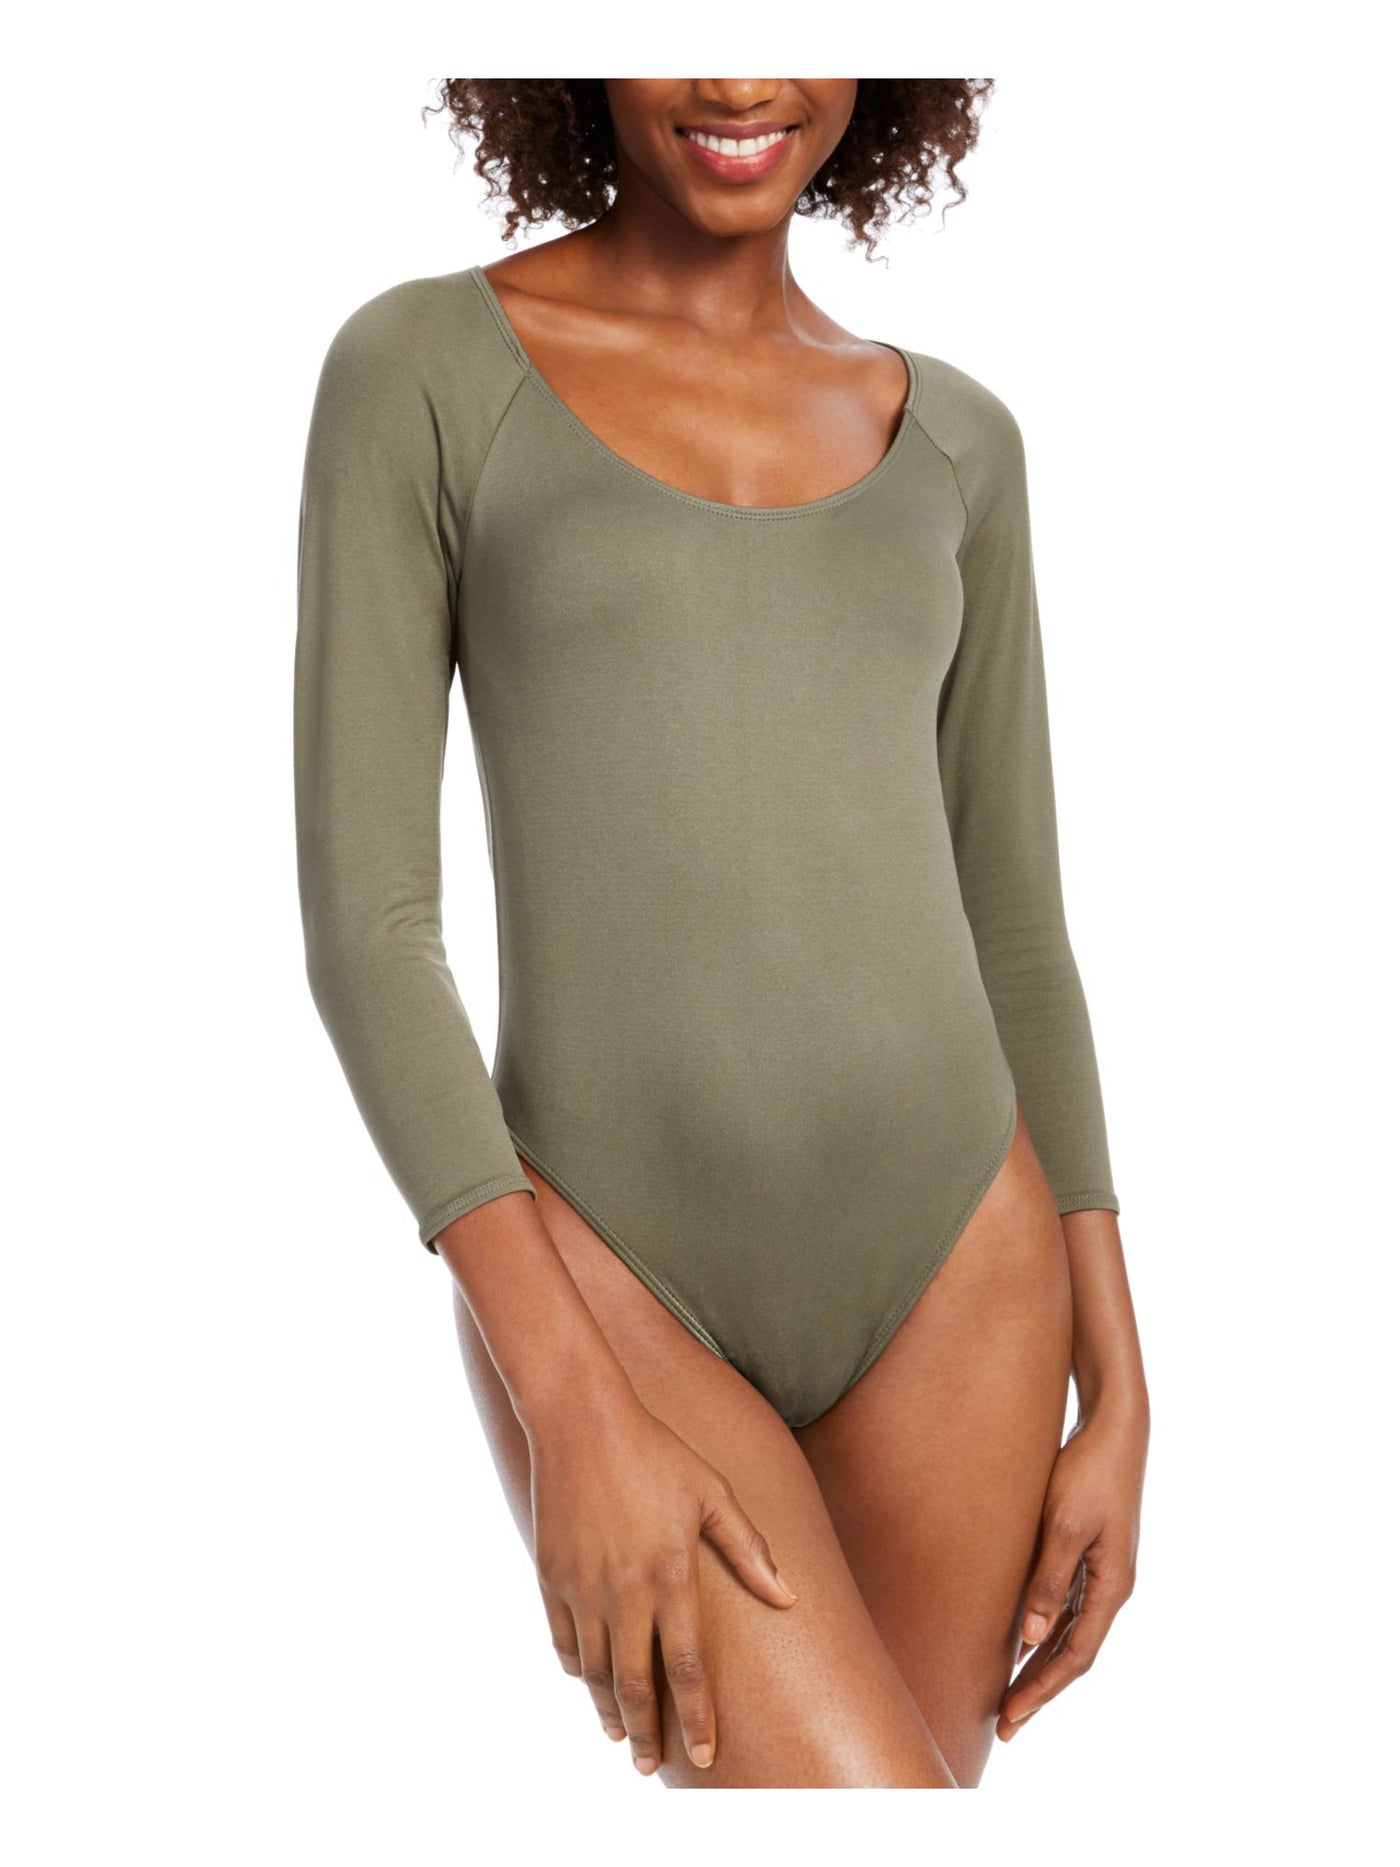 BAR III Womens Green 3/4 Sleeve Scoop Neck Body Suit Top XL